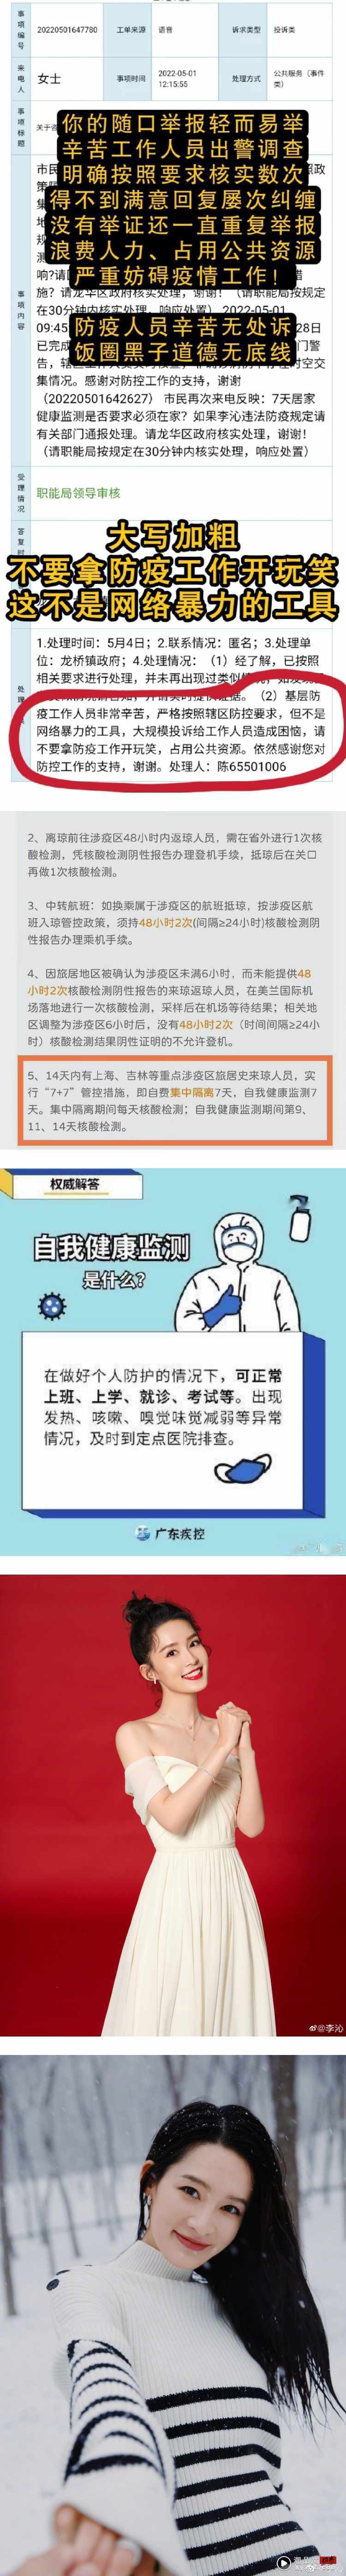 李沁爆违反防疫规定 逃离上海拍戏！ 遭公安上门警告...官方回应了 娱乐资讯 图3张